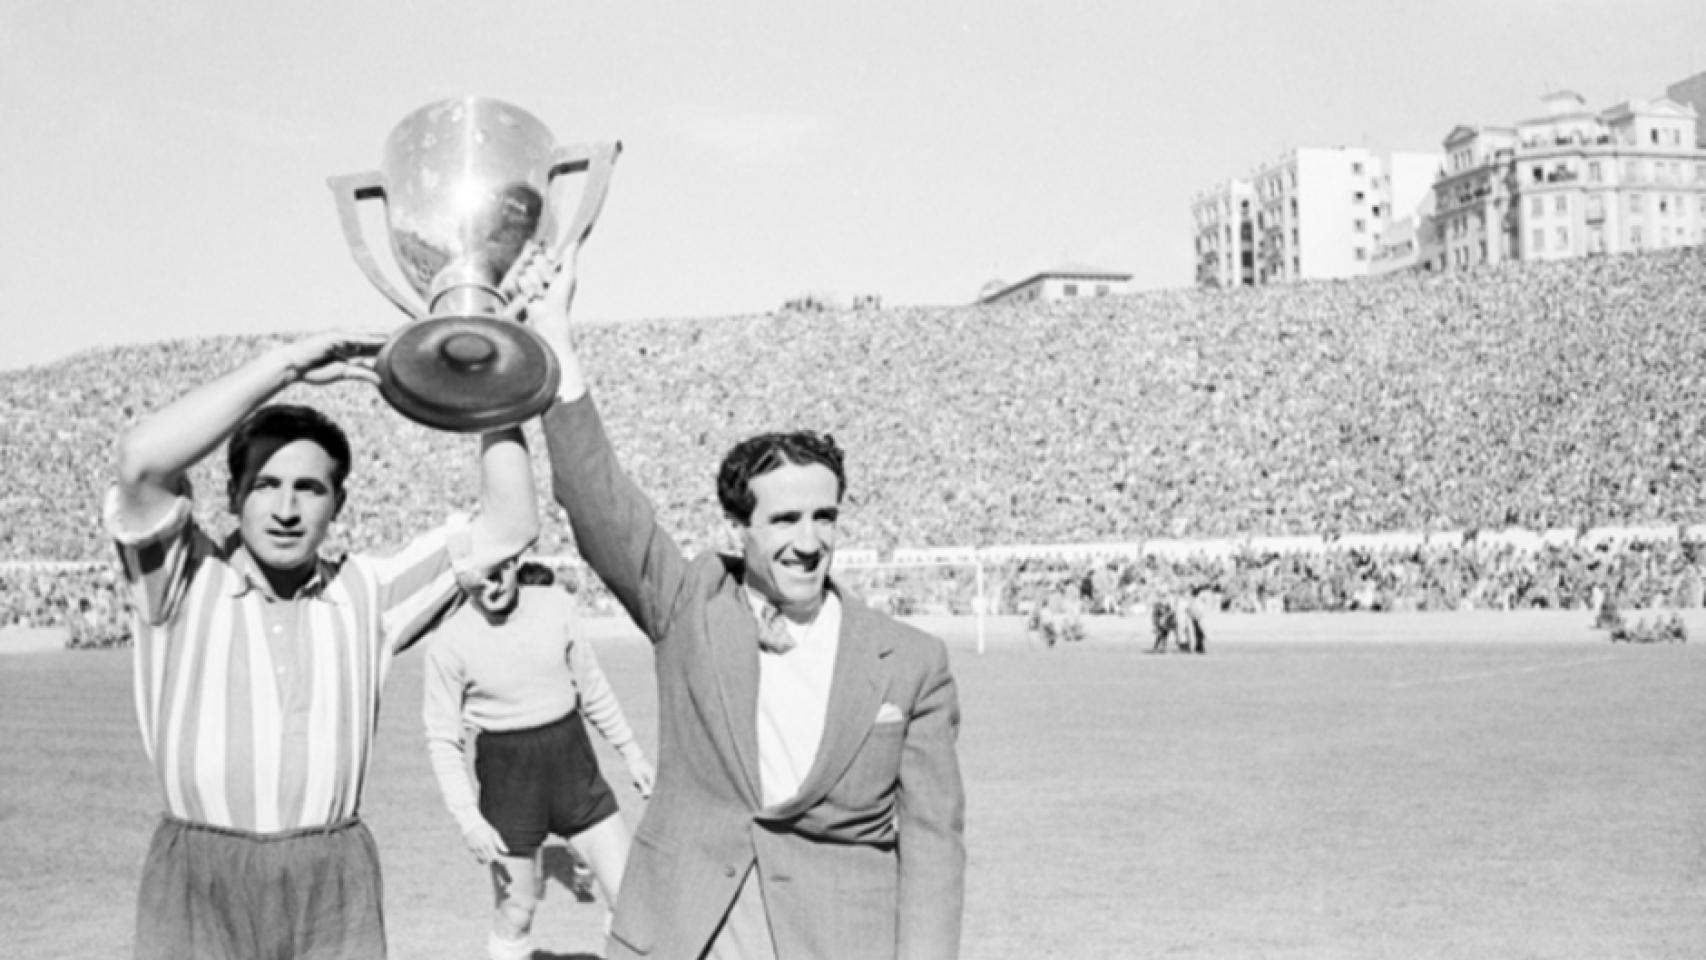 Tercera y cuarta Liga del Atlético de Madrid - 1949/50 - 1950/51 - Página 4 583203091_185925150_1706x960